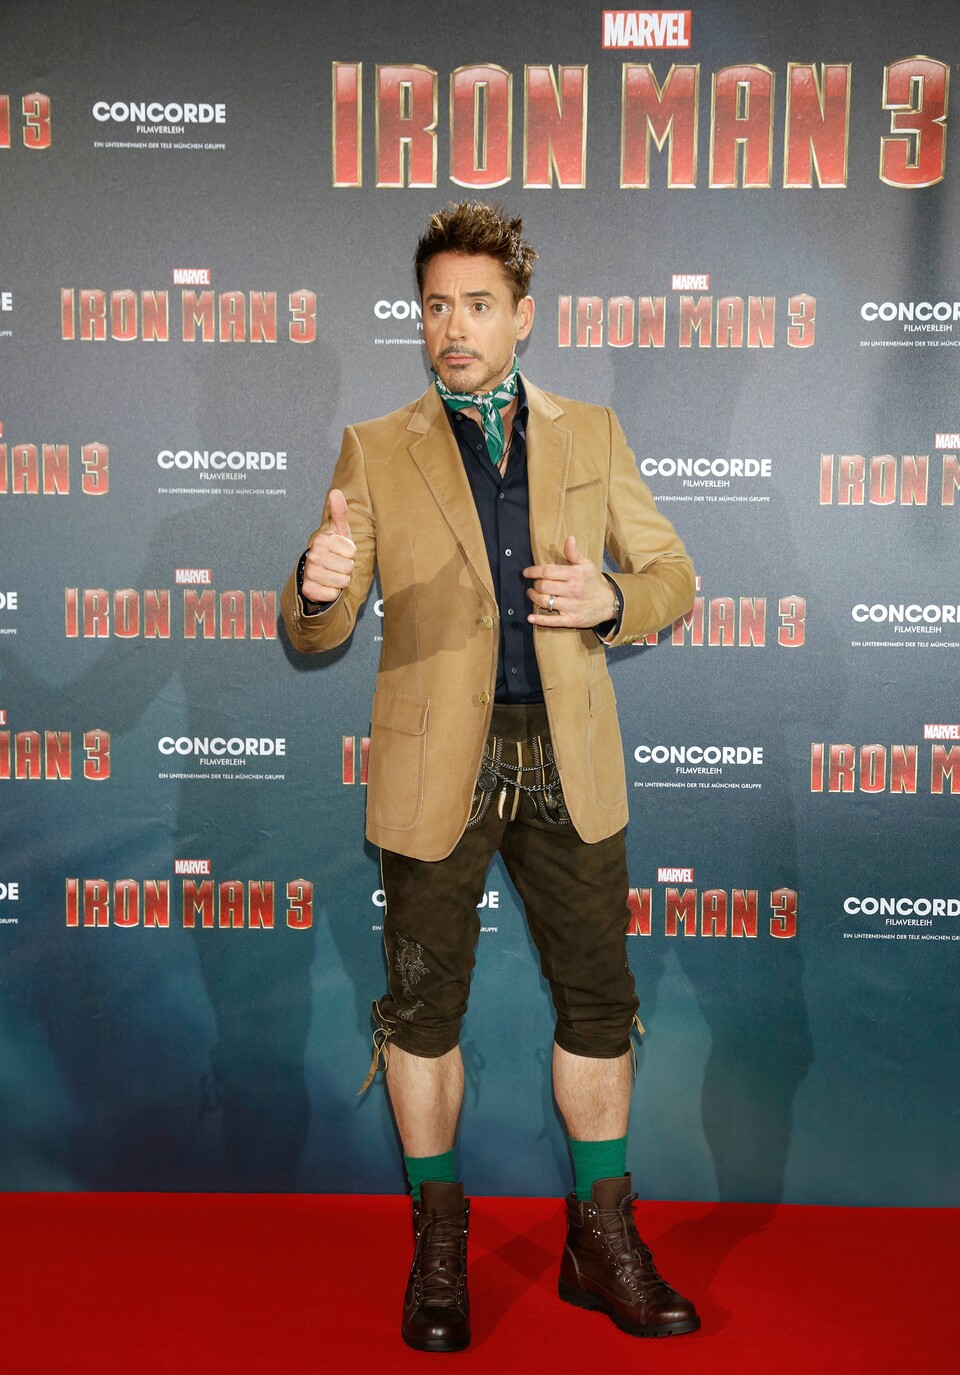 Robert Downey Jr. trägt beim Pressetermin in München eine Lederhose.